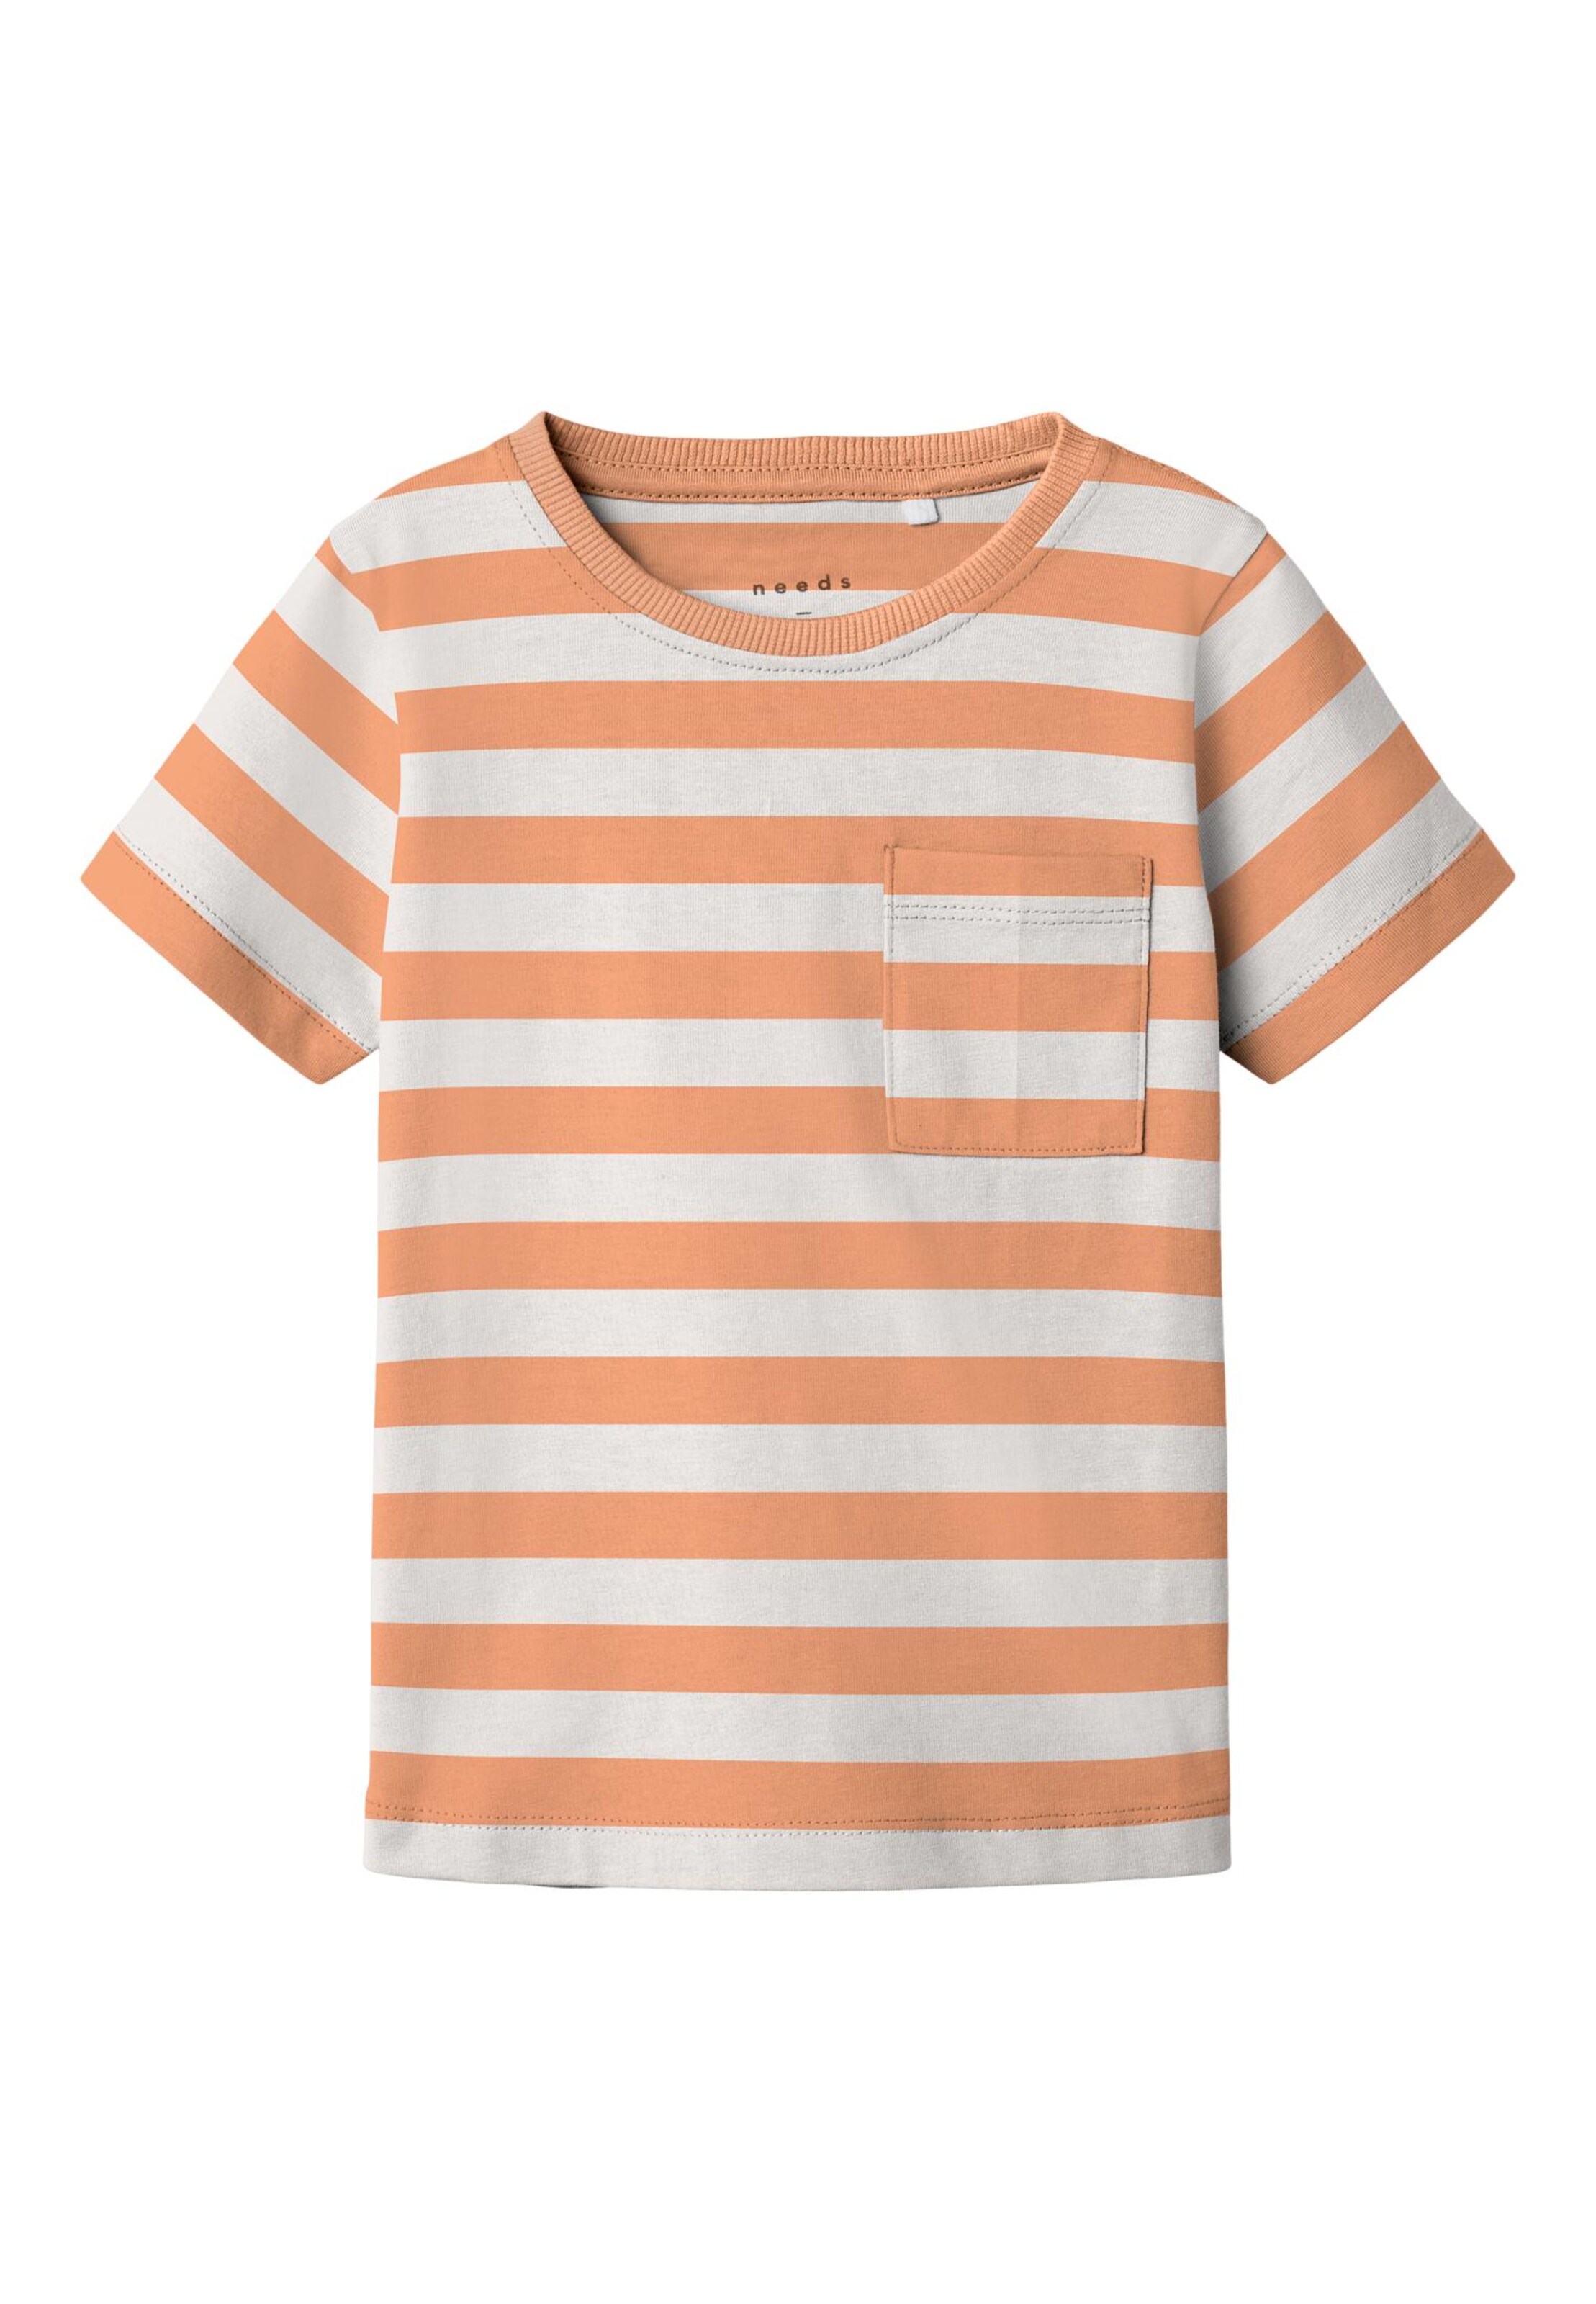 Rabatt 62 % KINDER Hemden & T-Shirts Pailletten Name it T-Shirt Rosa 